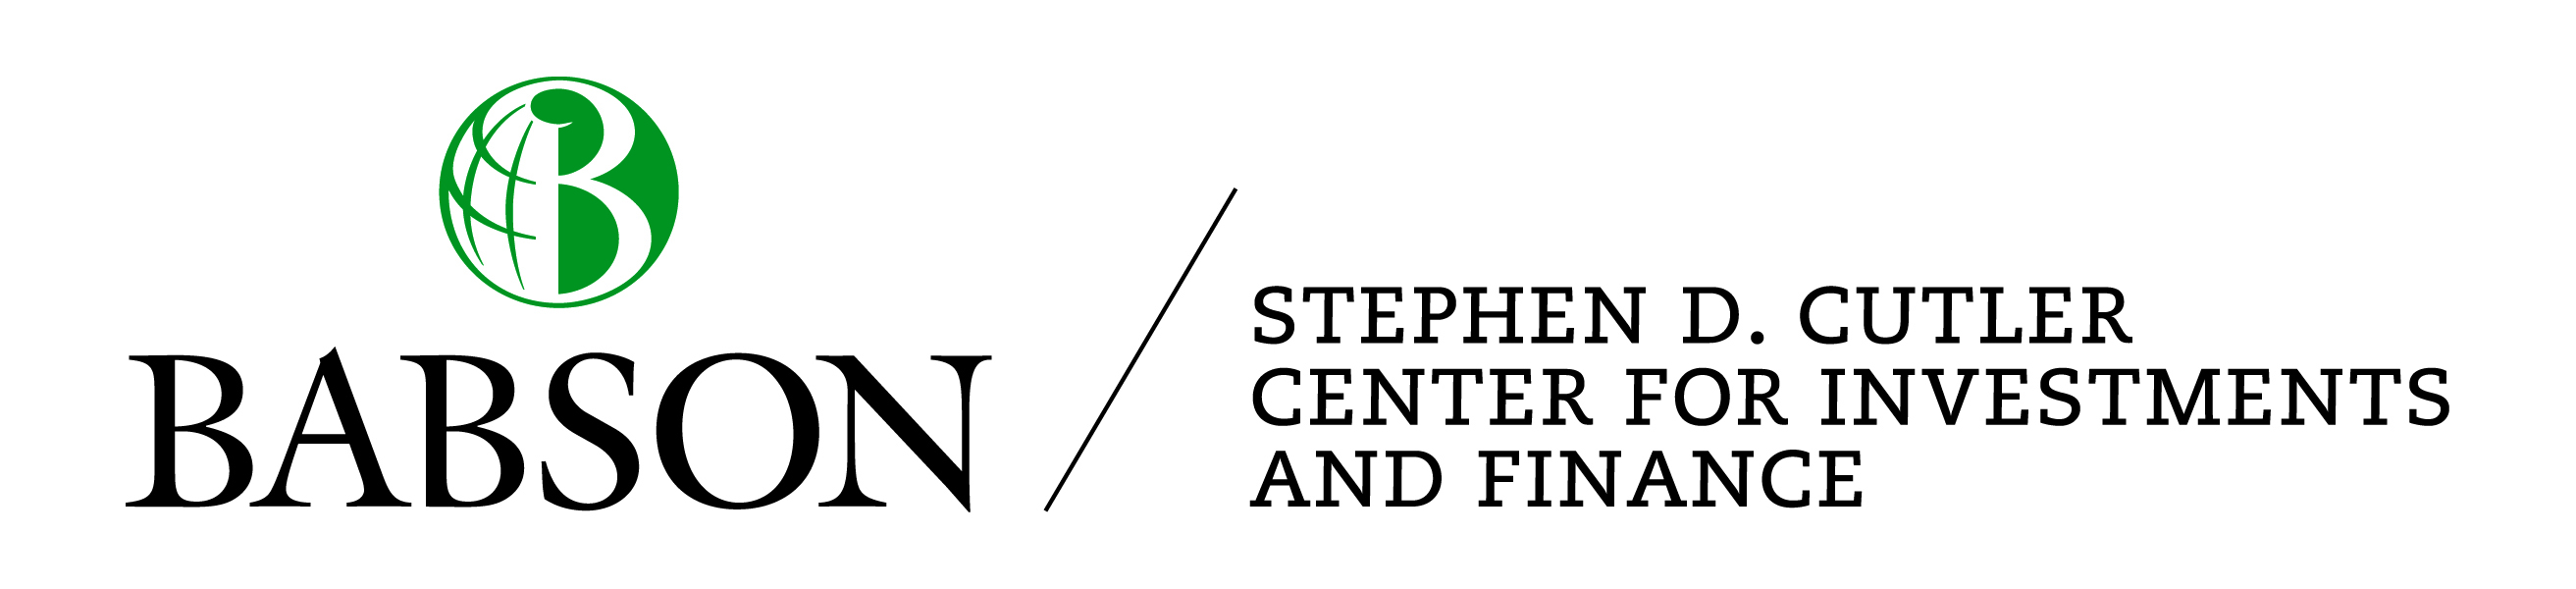 Cutler center logo